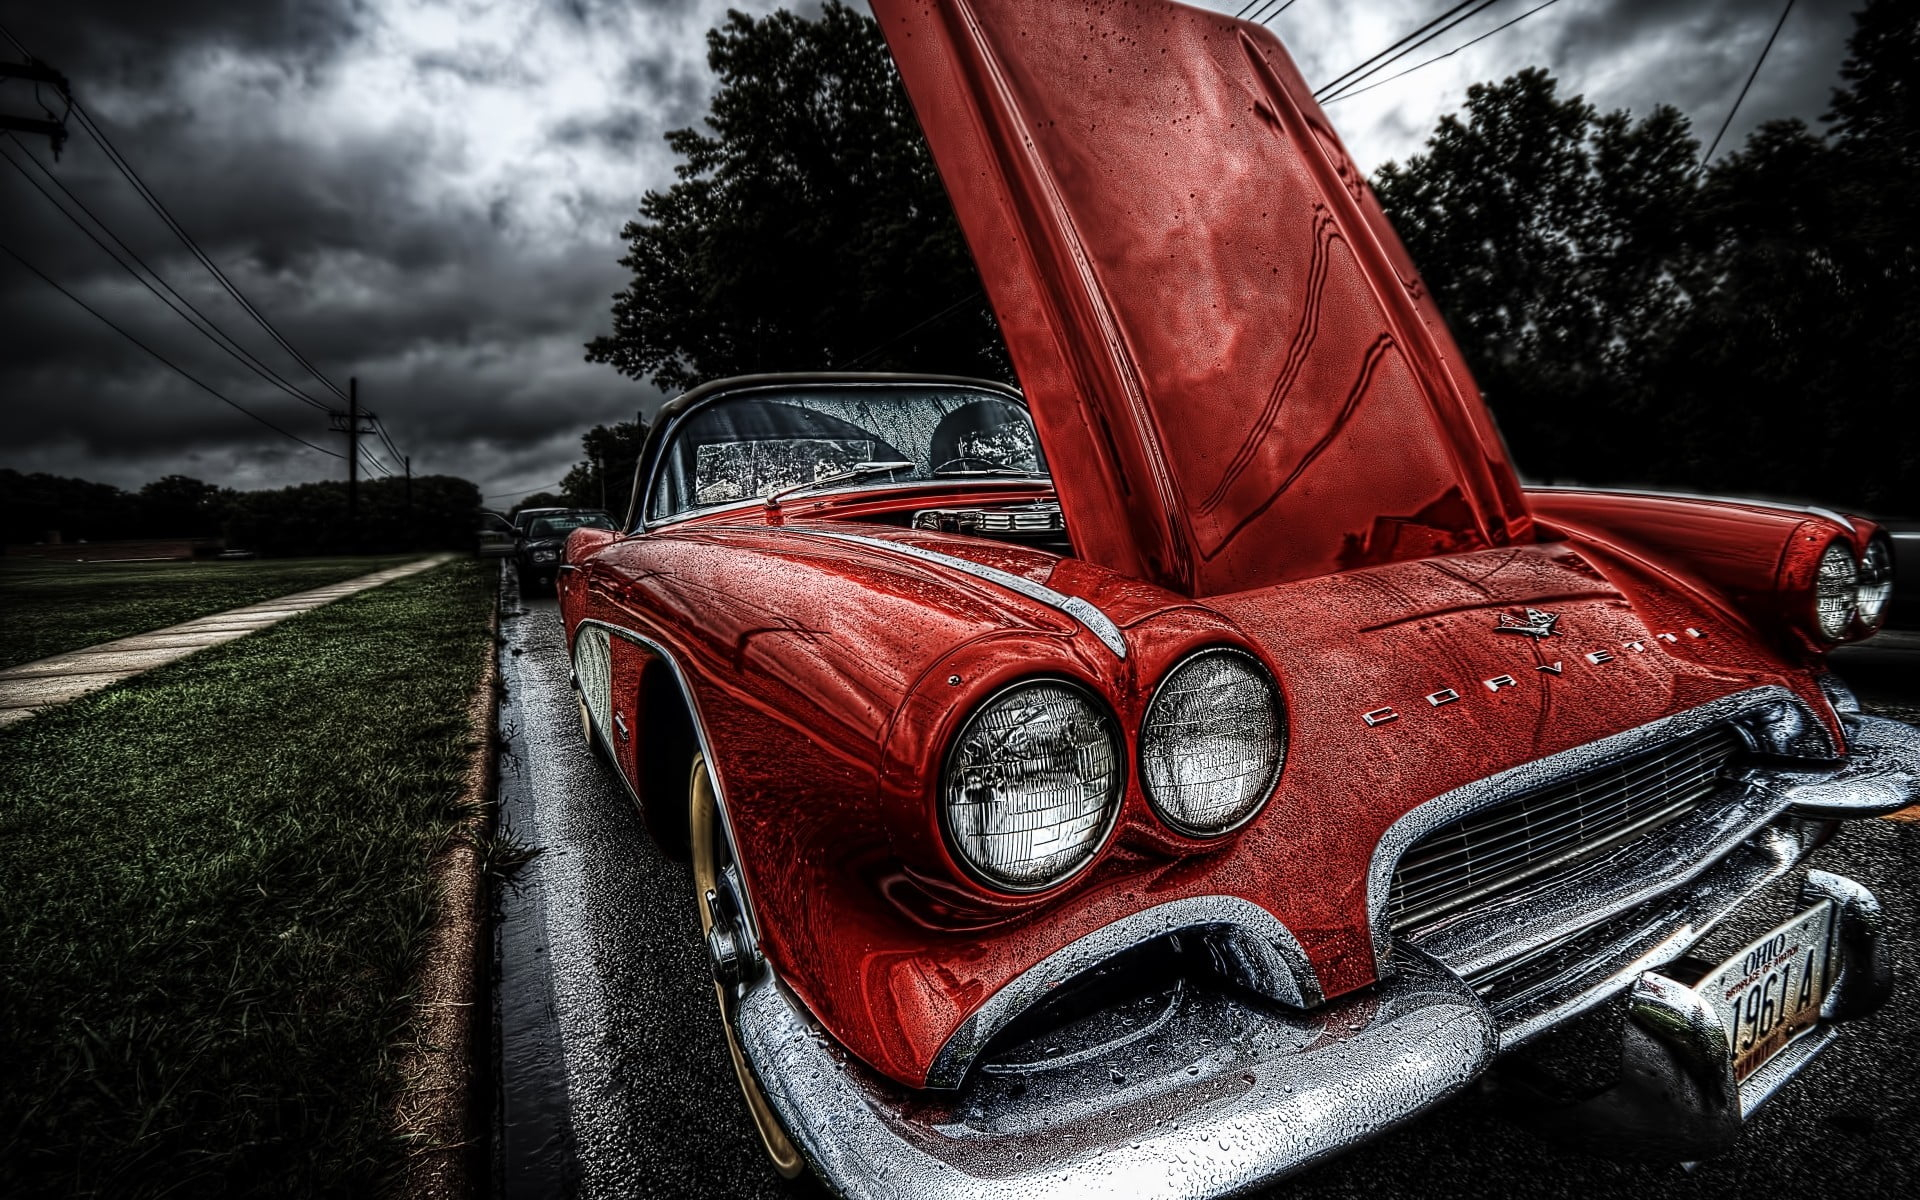 Red vehicle, old car, Corvette, 1961 Chevrolet Corvette, red cars wallpaper